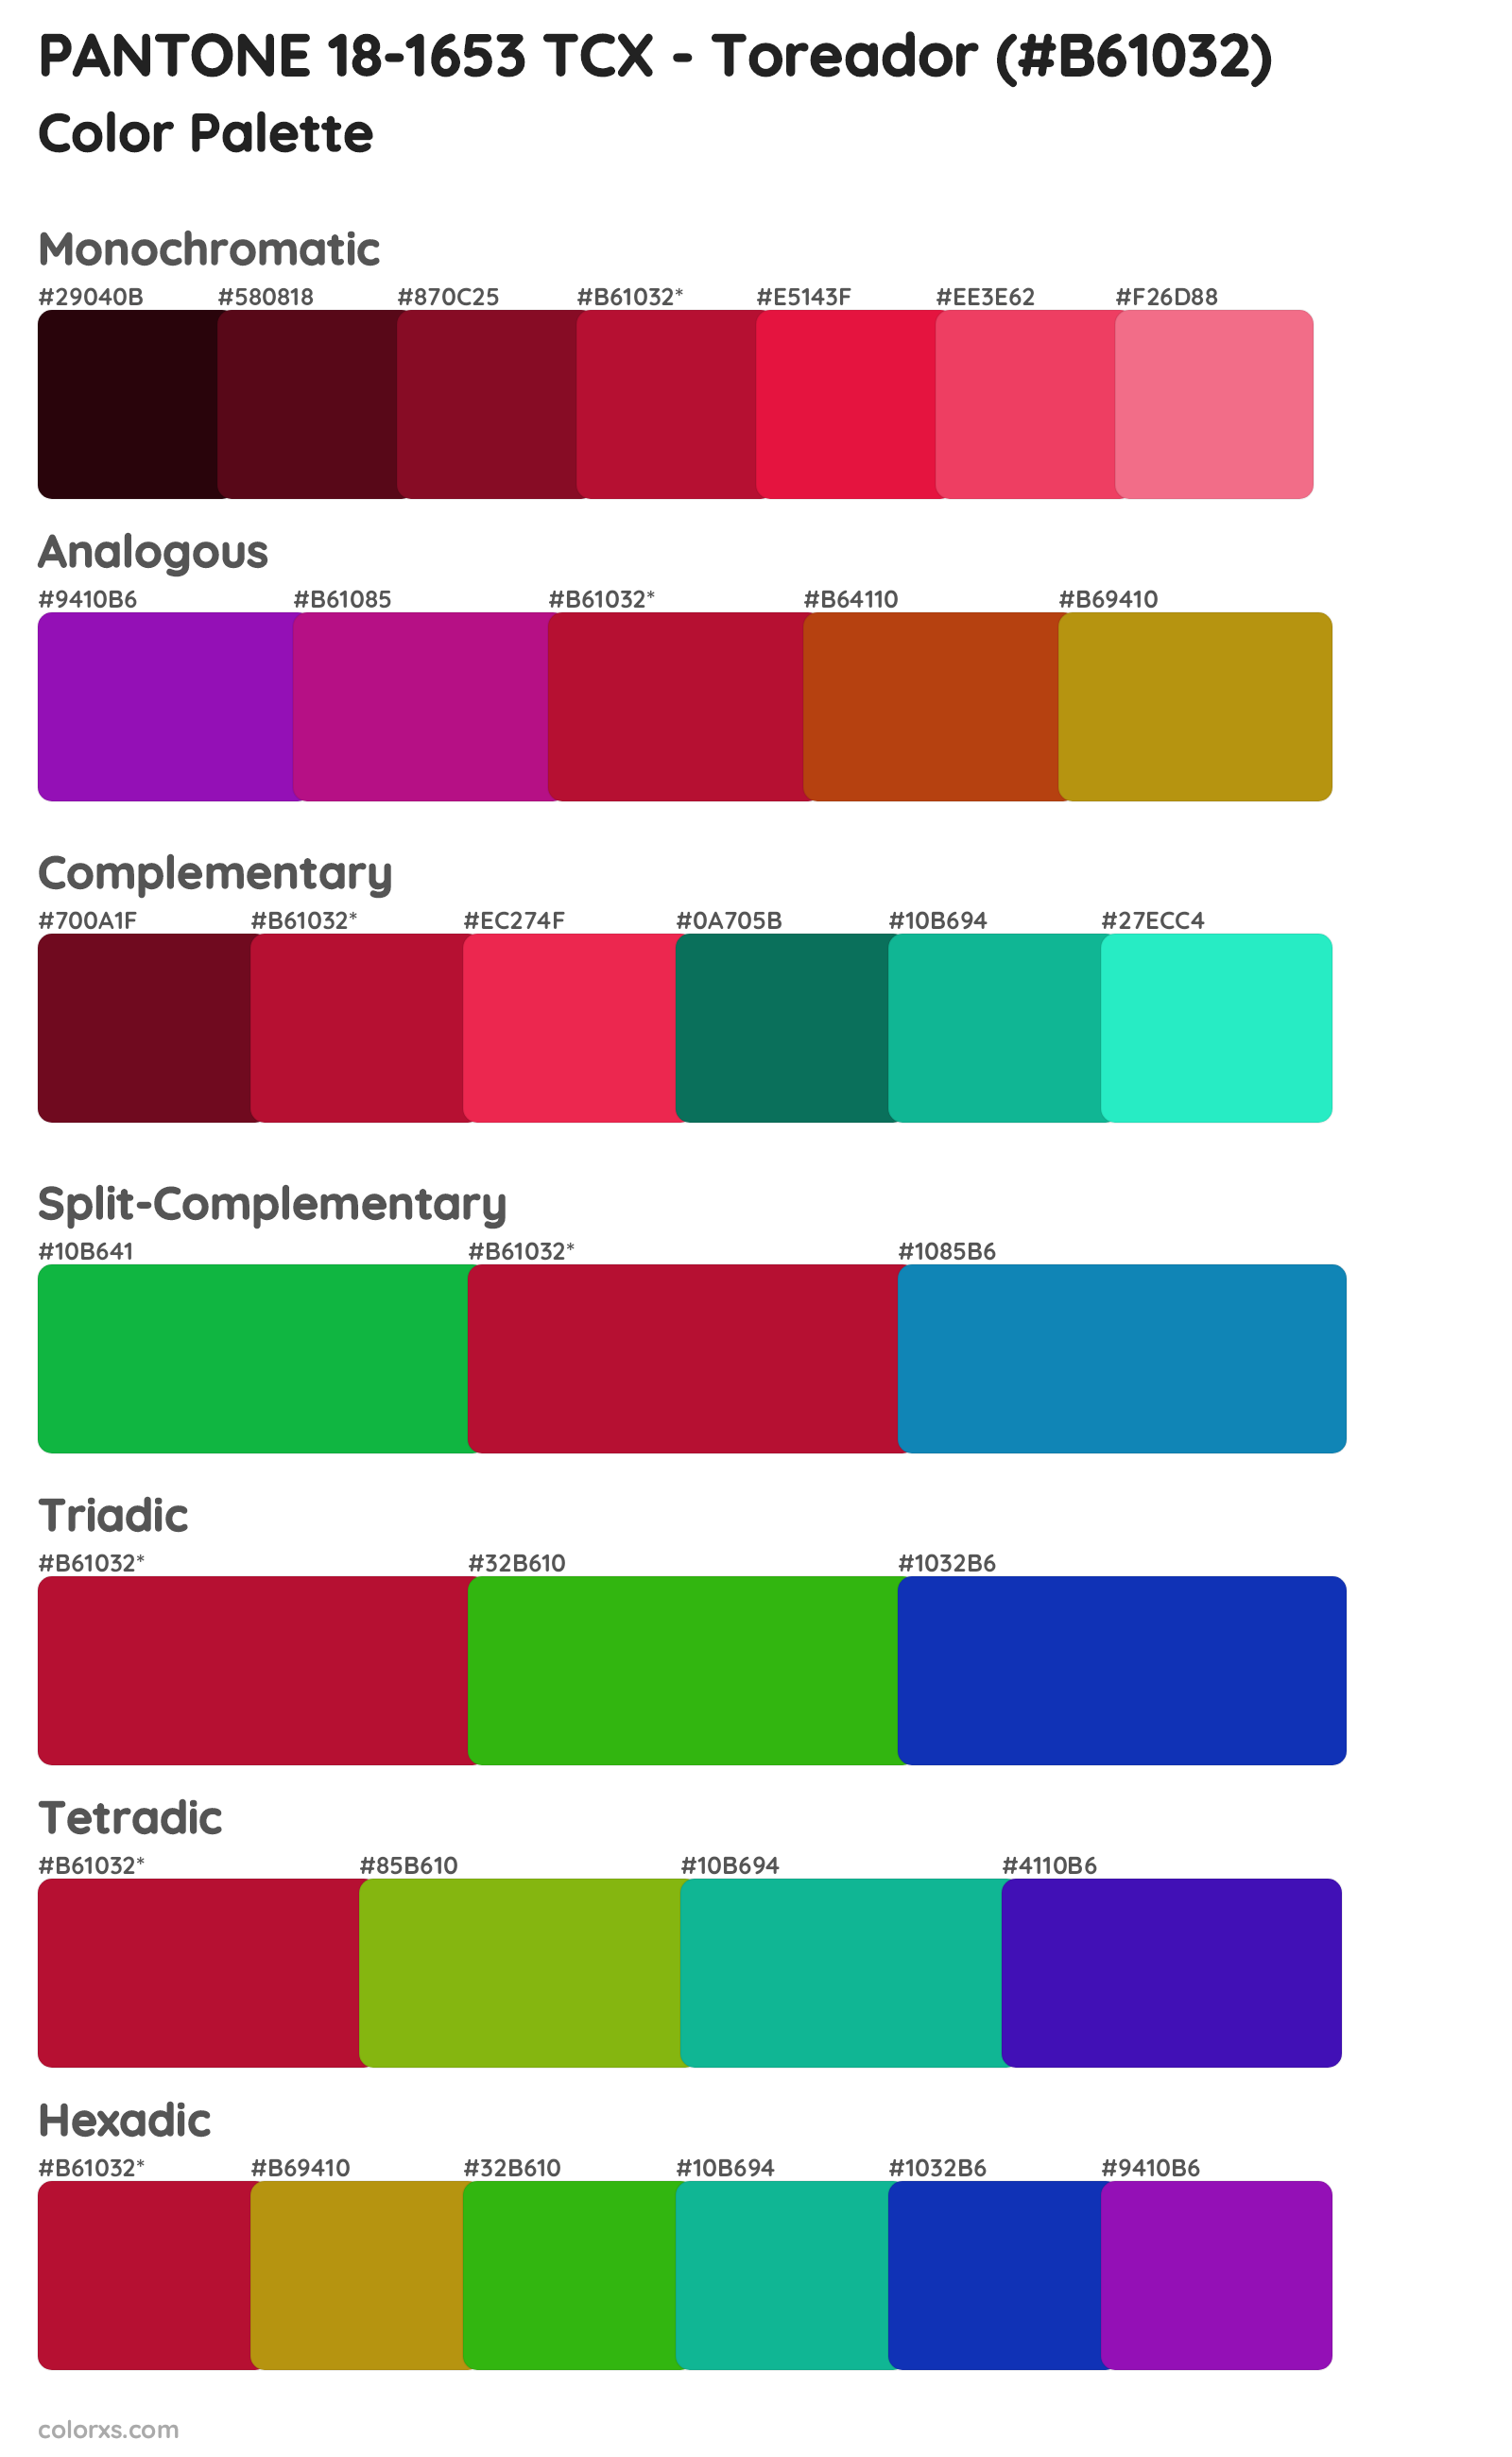 PANTONE 18-1653 TCX - Toreador Color Scheme Palettes